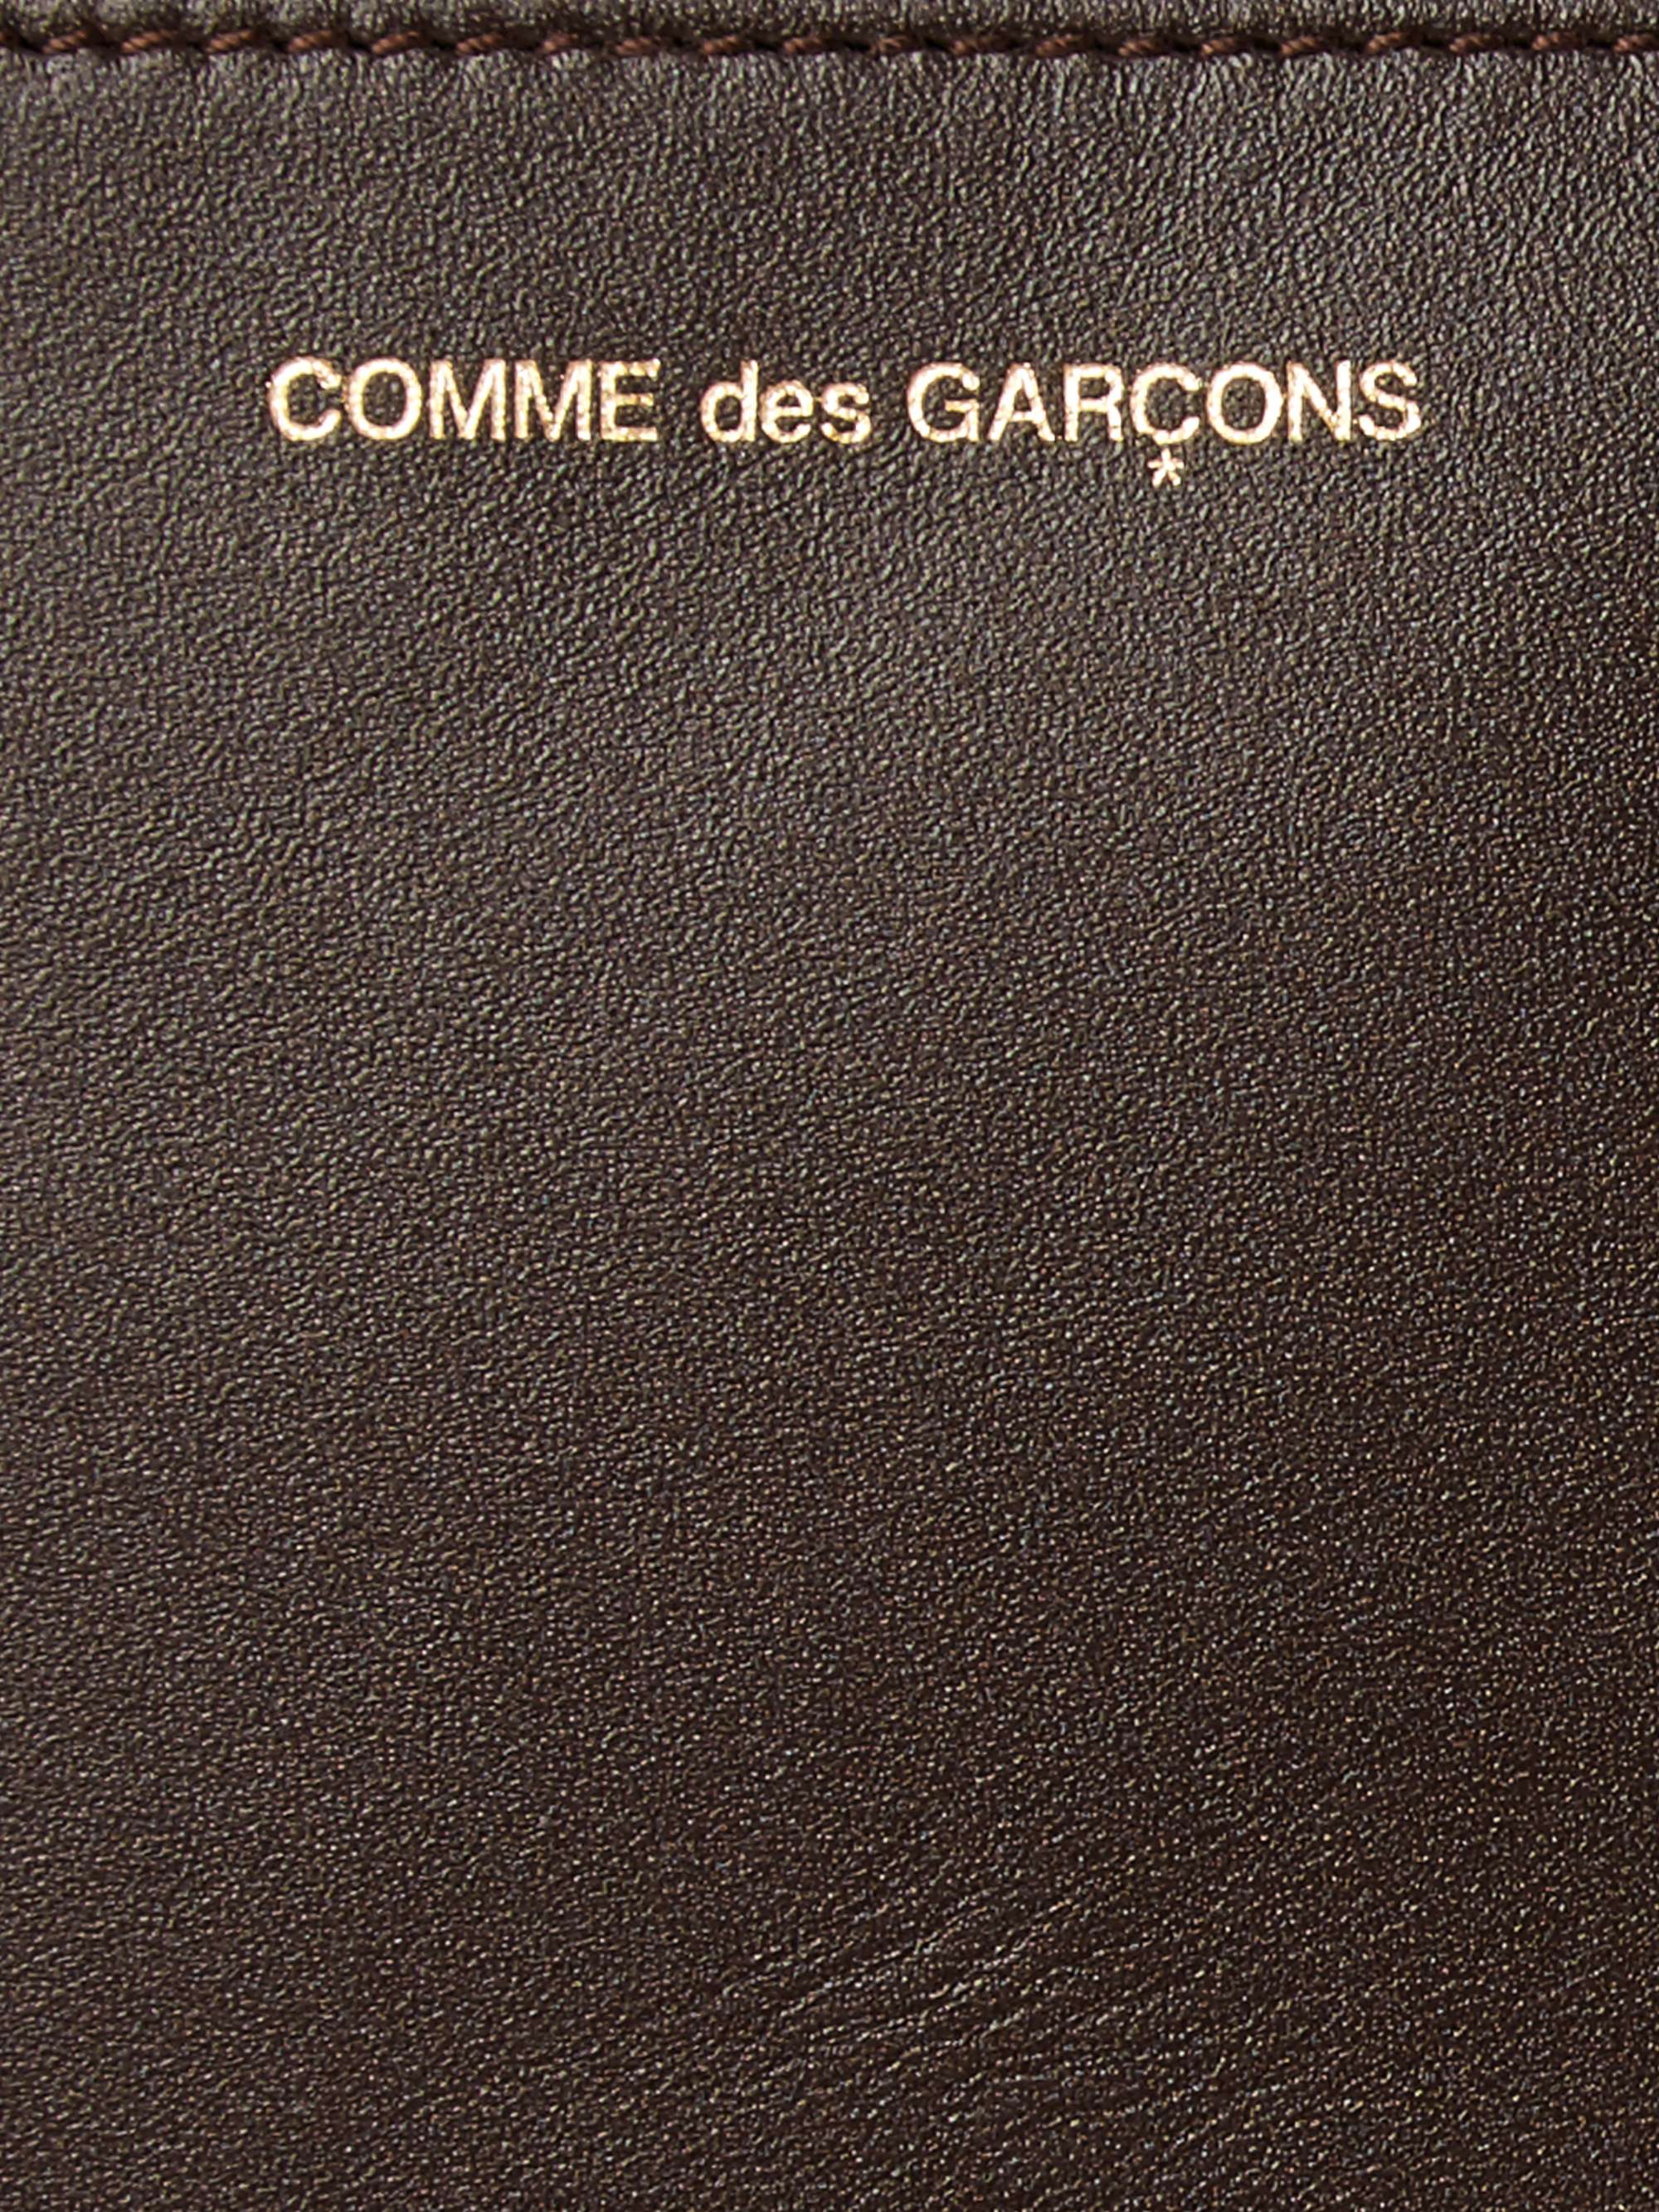 COMME DES GARÇONS Leather Pouch